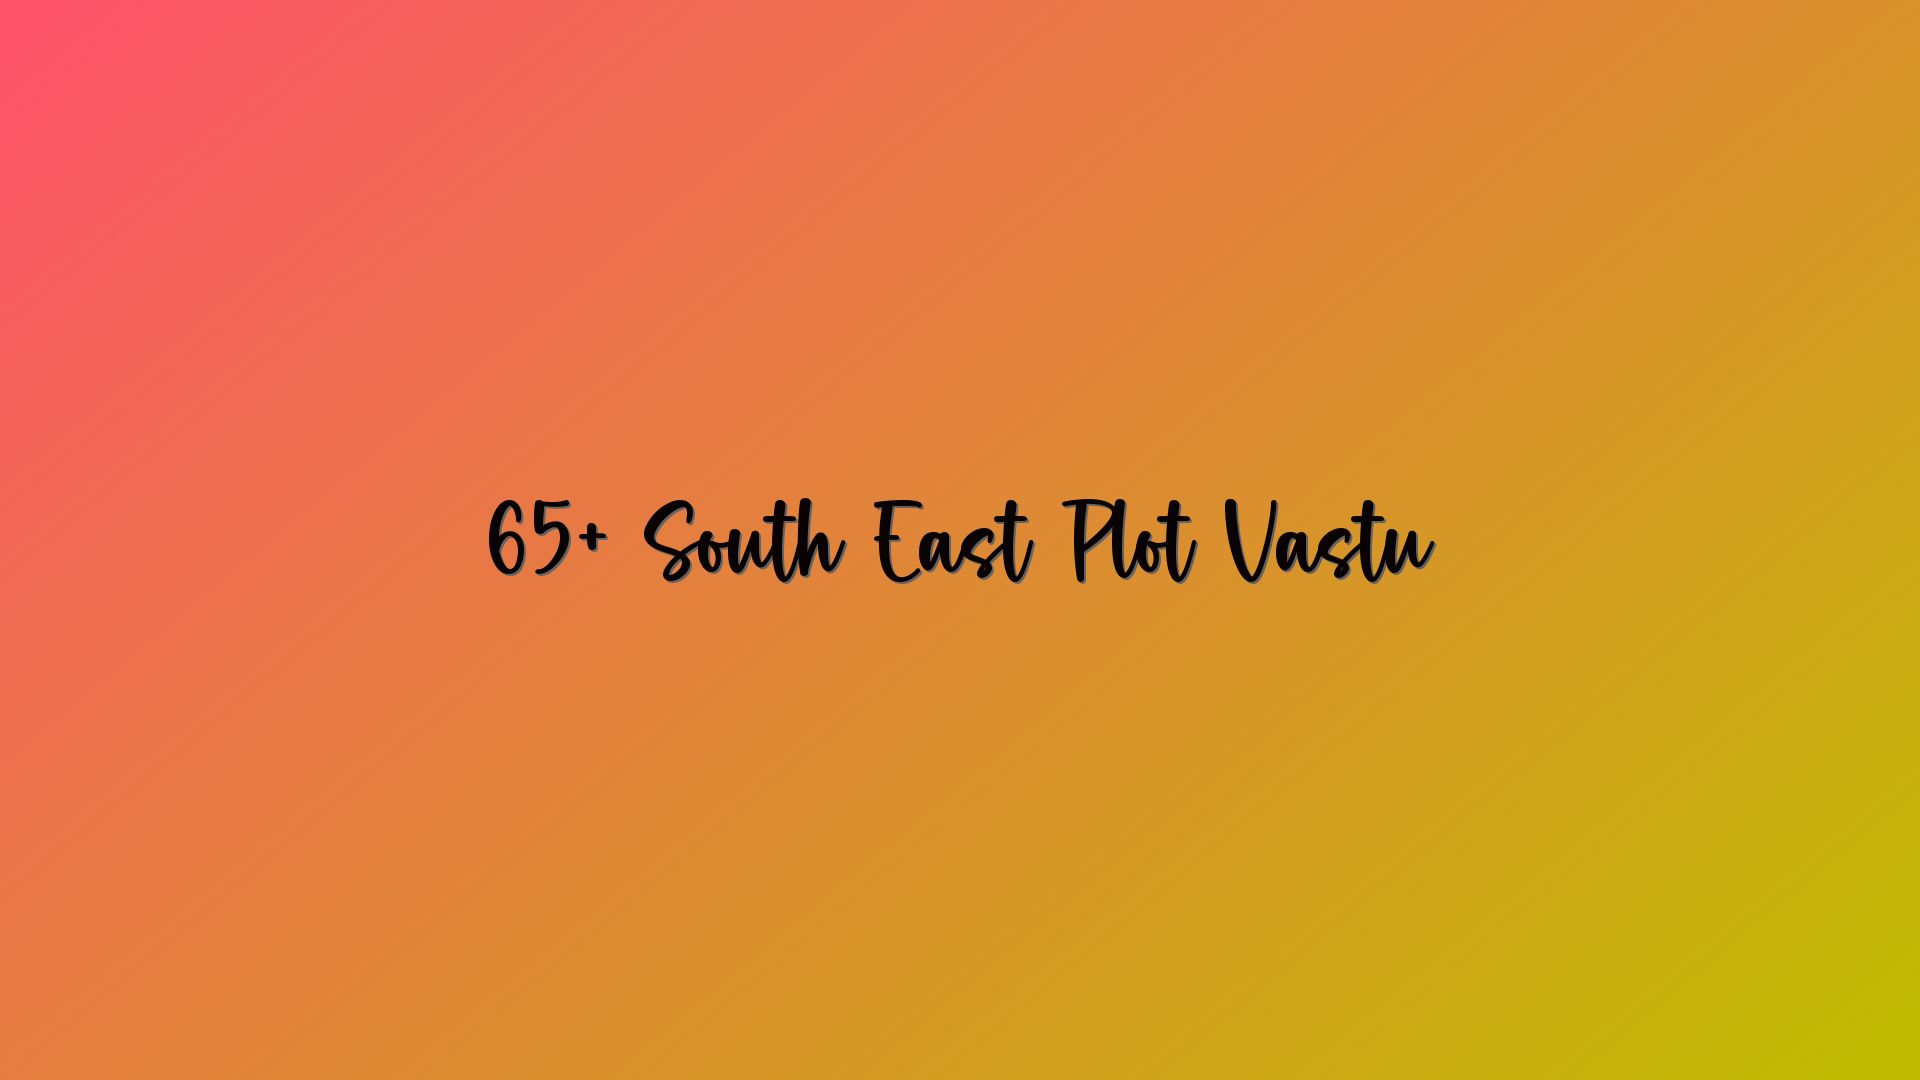 65+ South East Plot Vastu